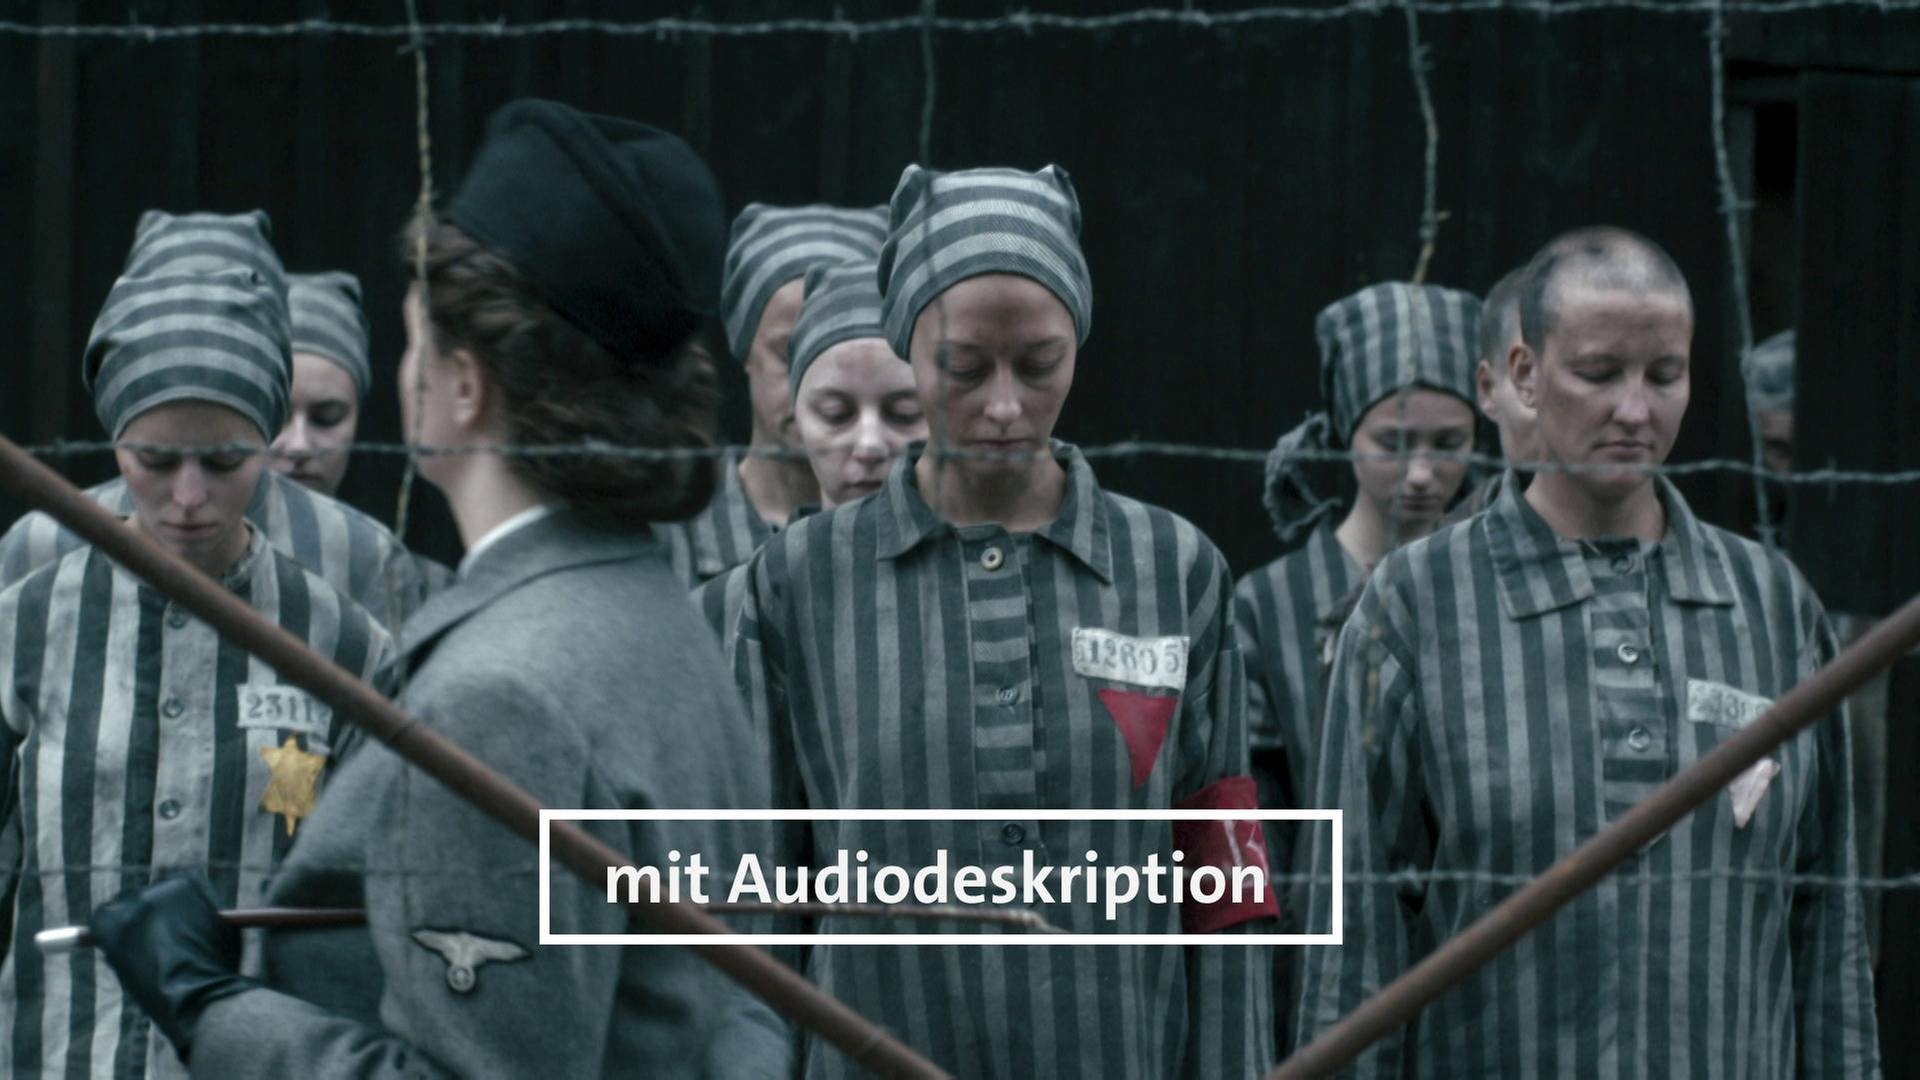 Tschechische Republik 1945 · Im Konzentrationslager muss Eva für die SS musizieren (Audiodeskription) · Der Krieg und ich